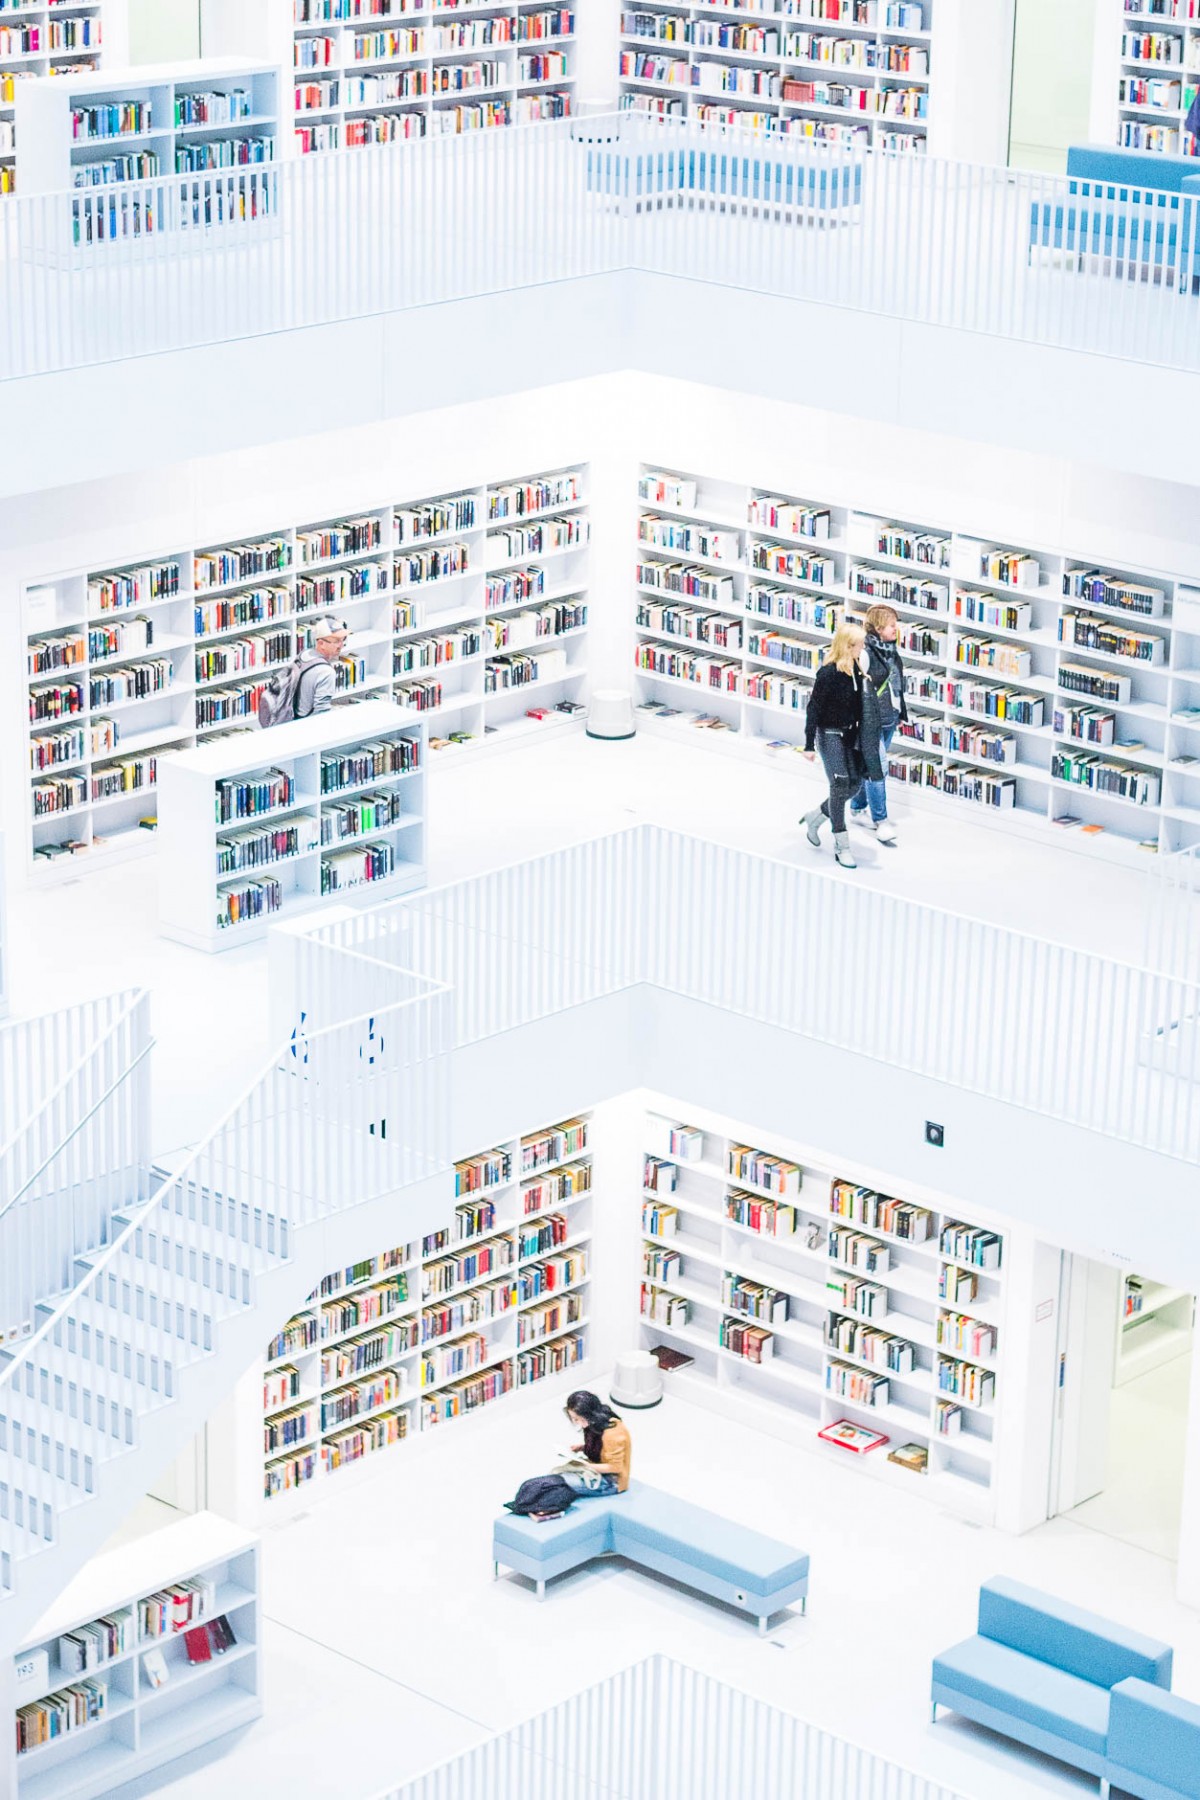 Stuttgart City Library 